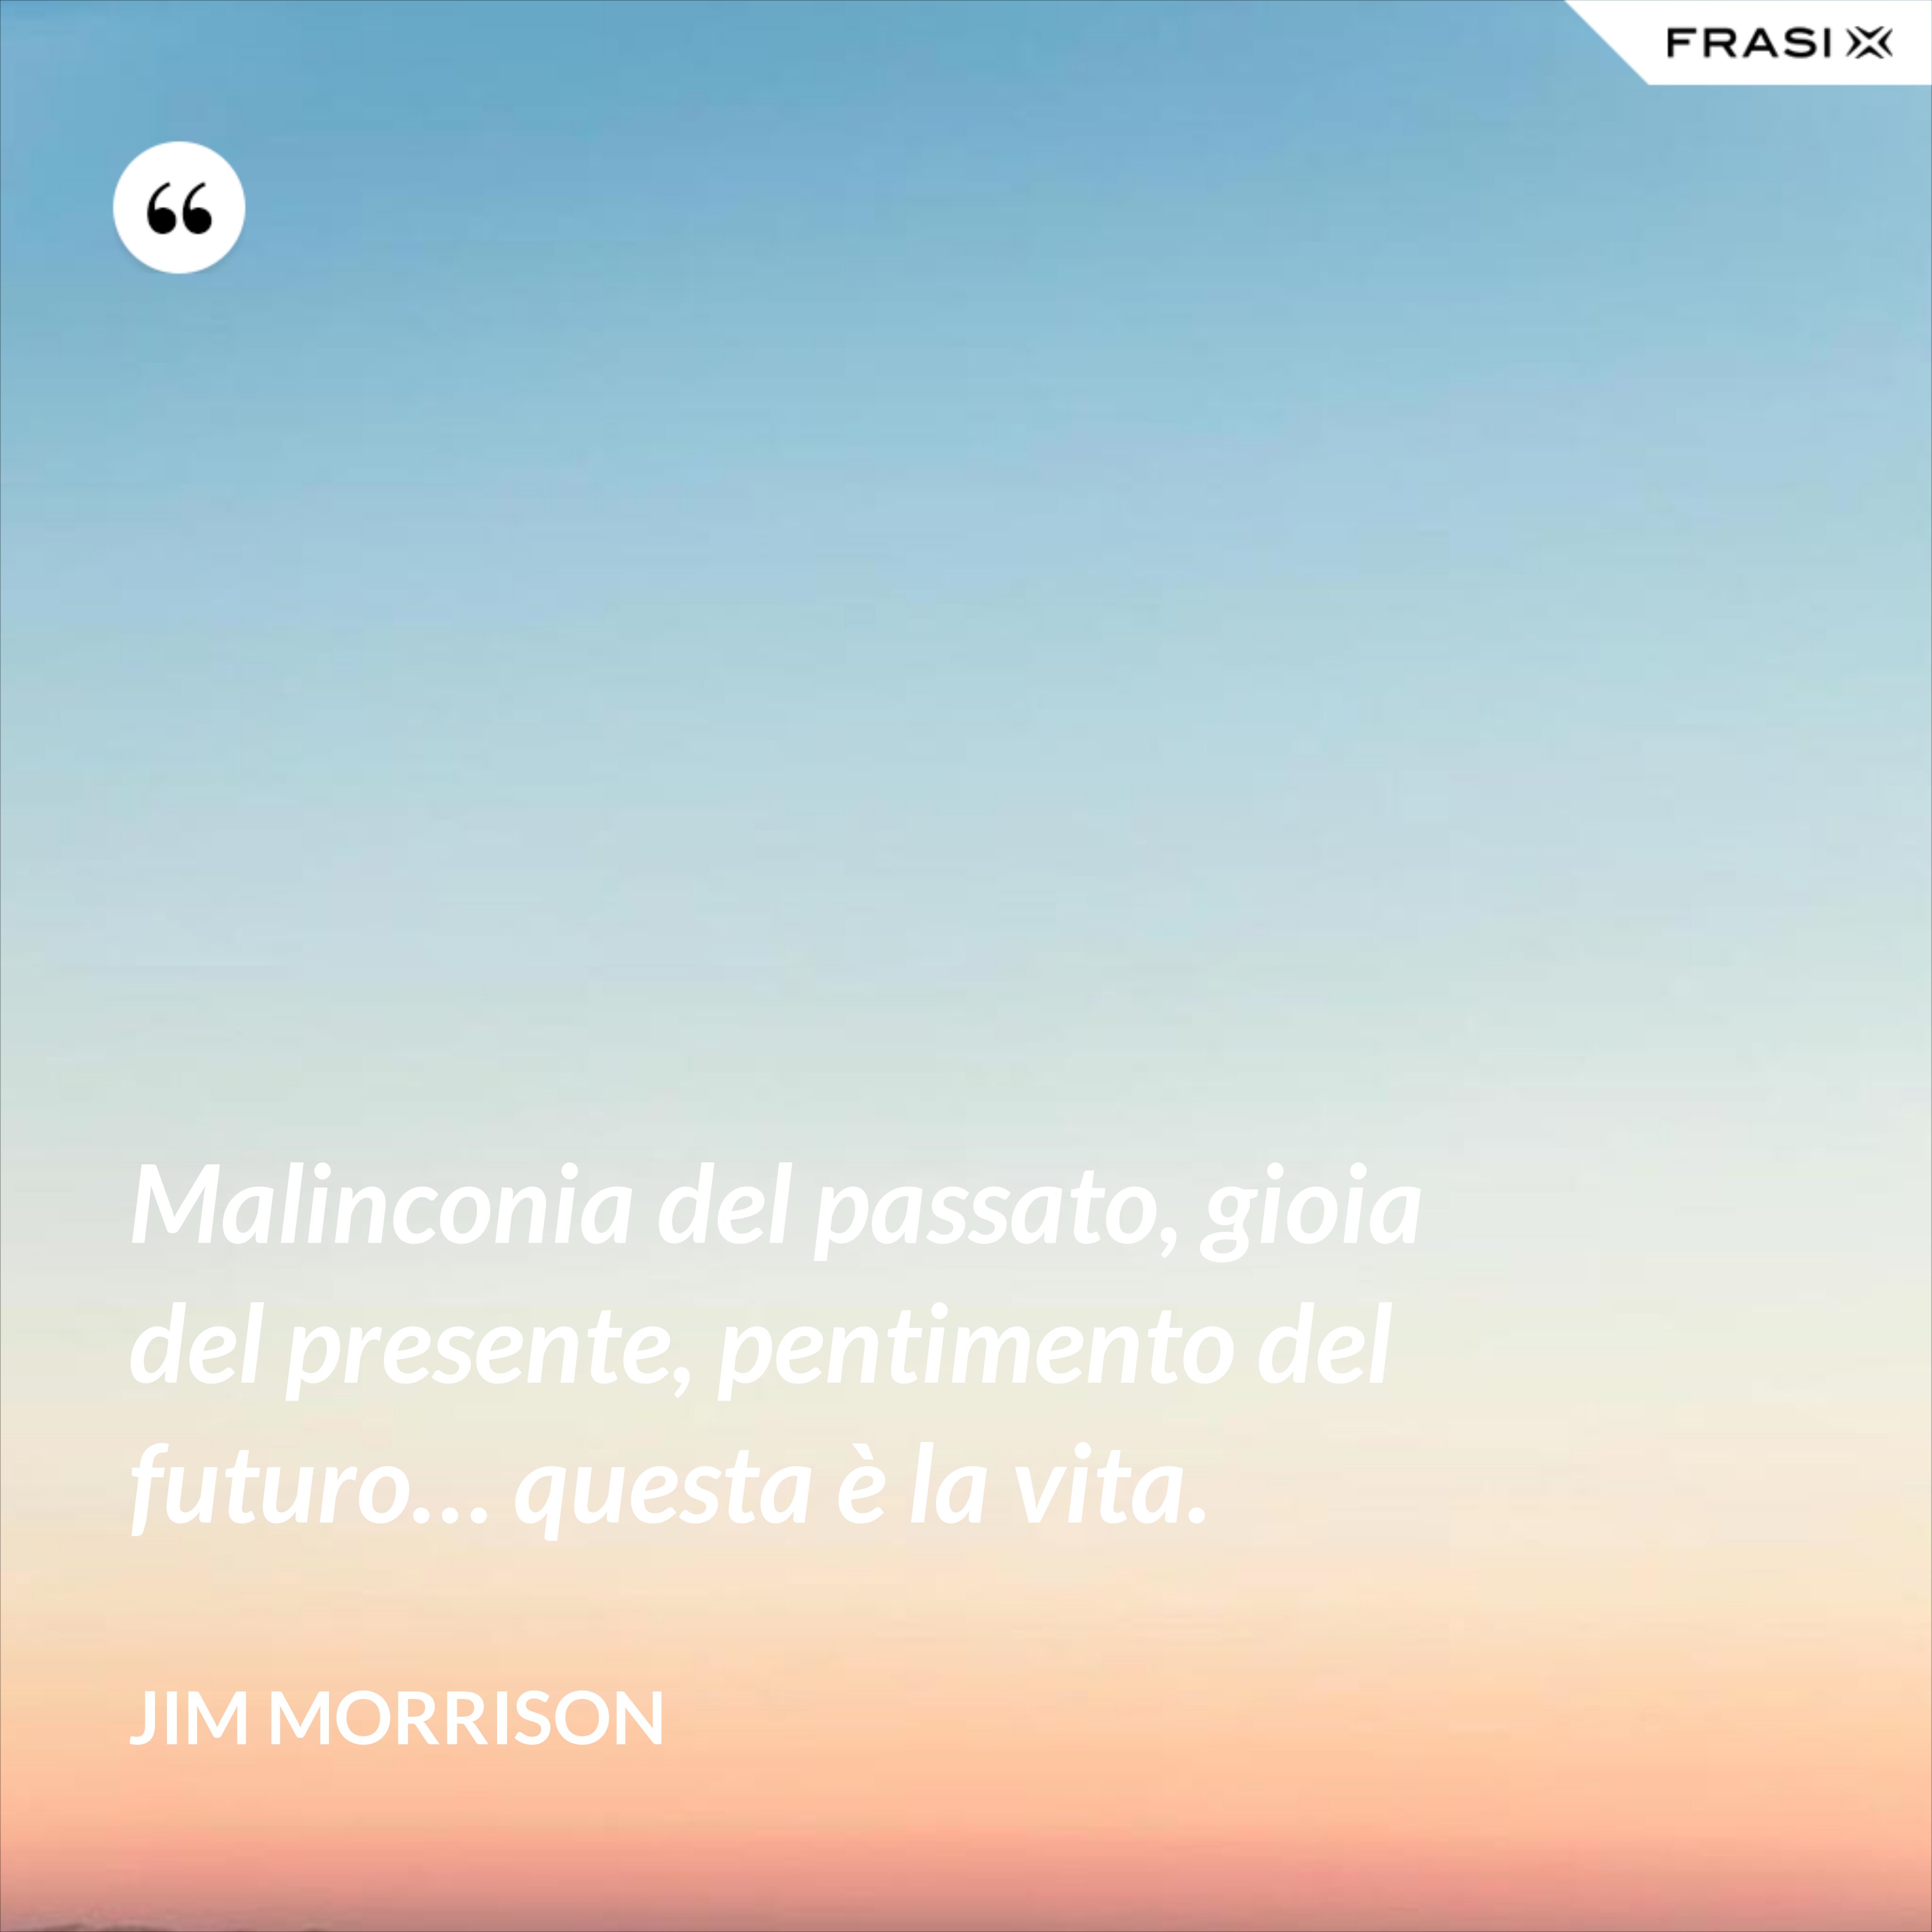 Malinconia del passato, gioia del presente, pentimento del futuro… questa è la vita. - Jim Morrison